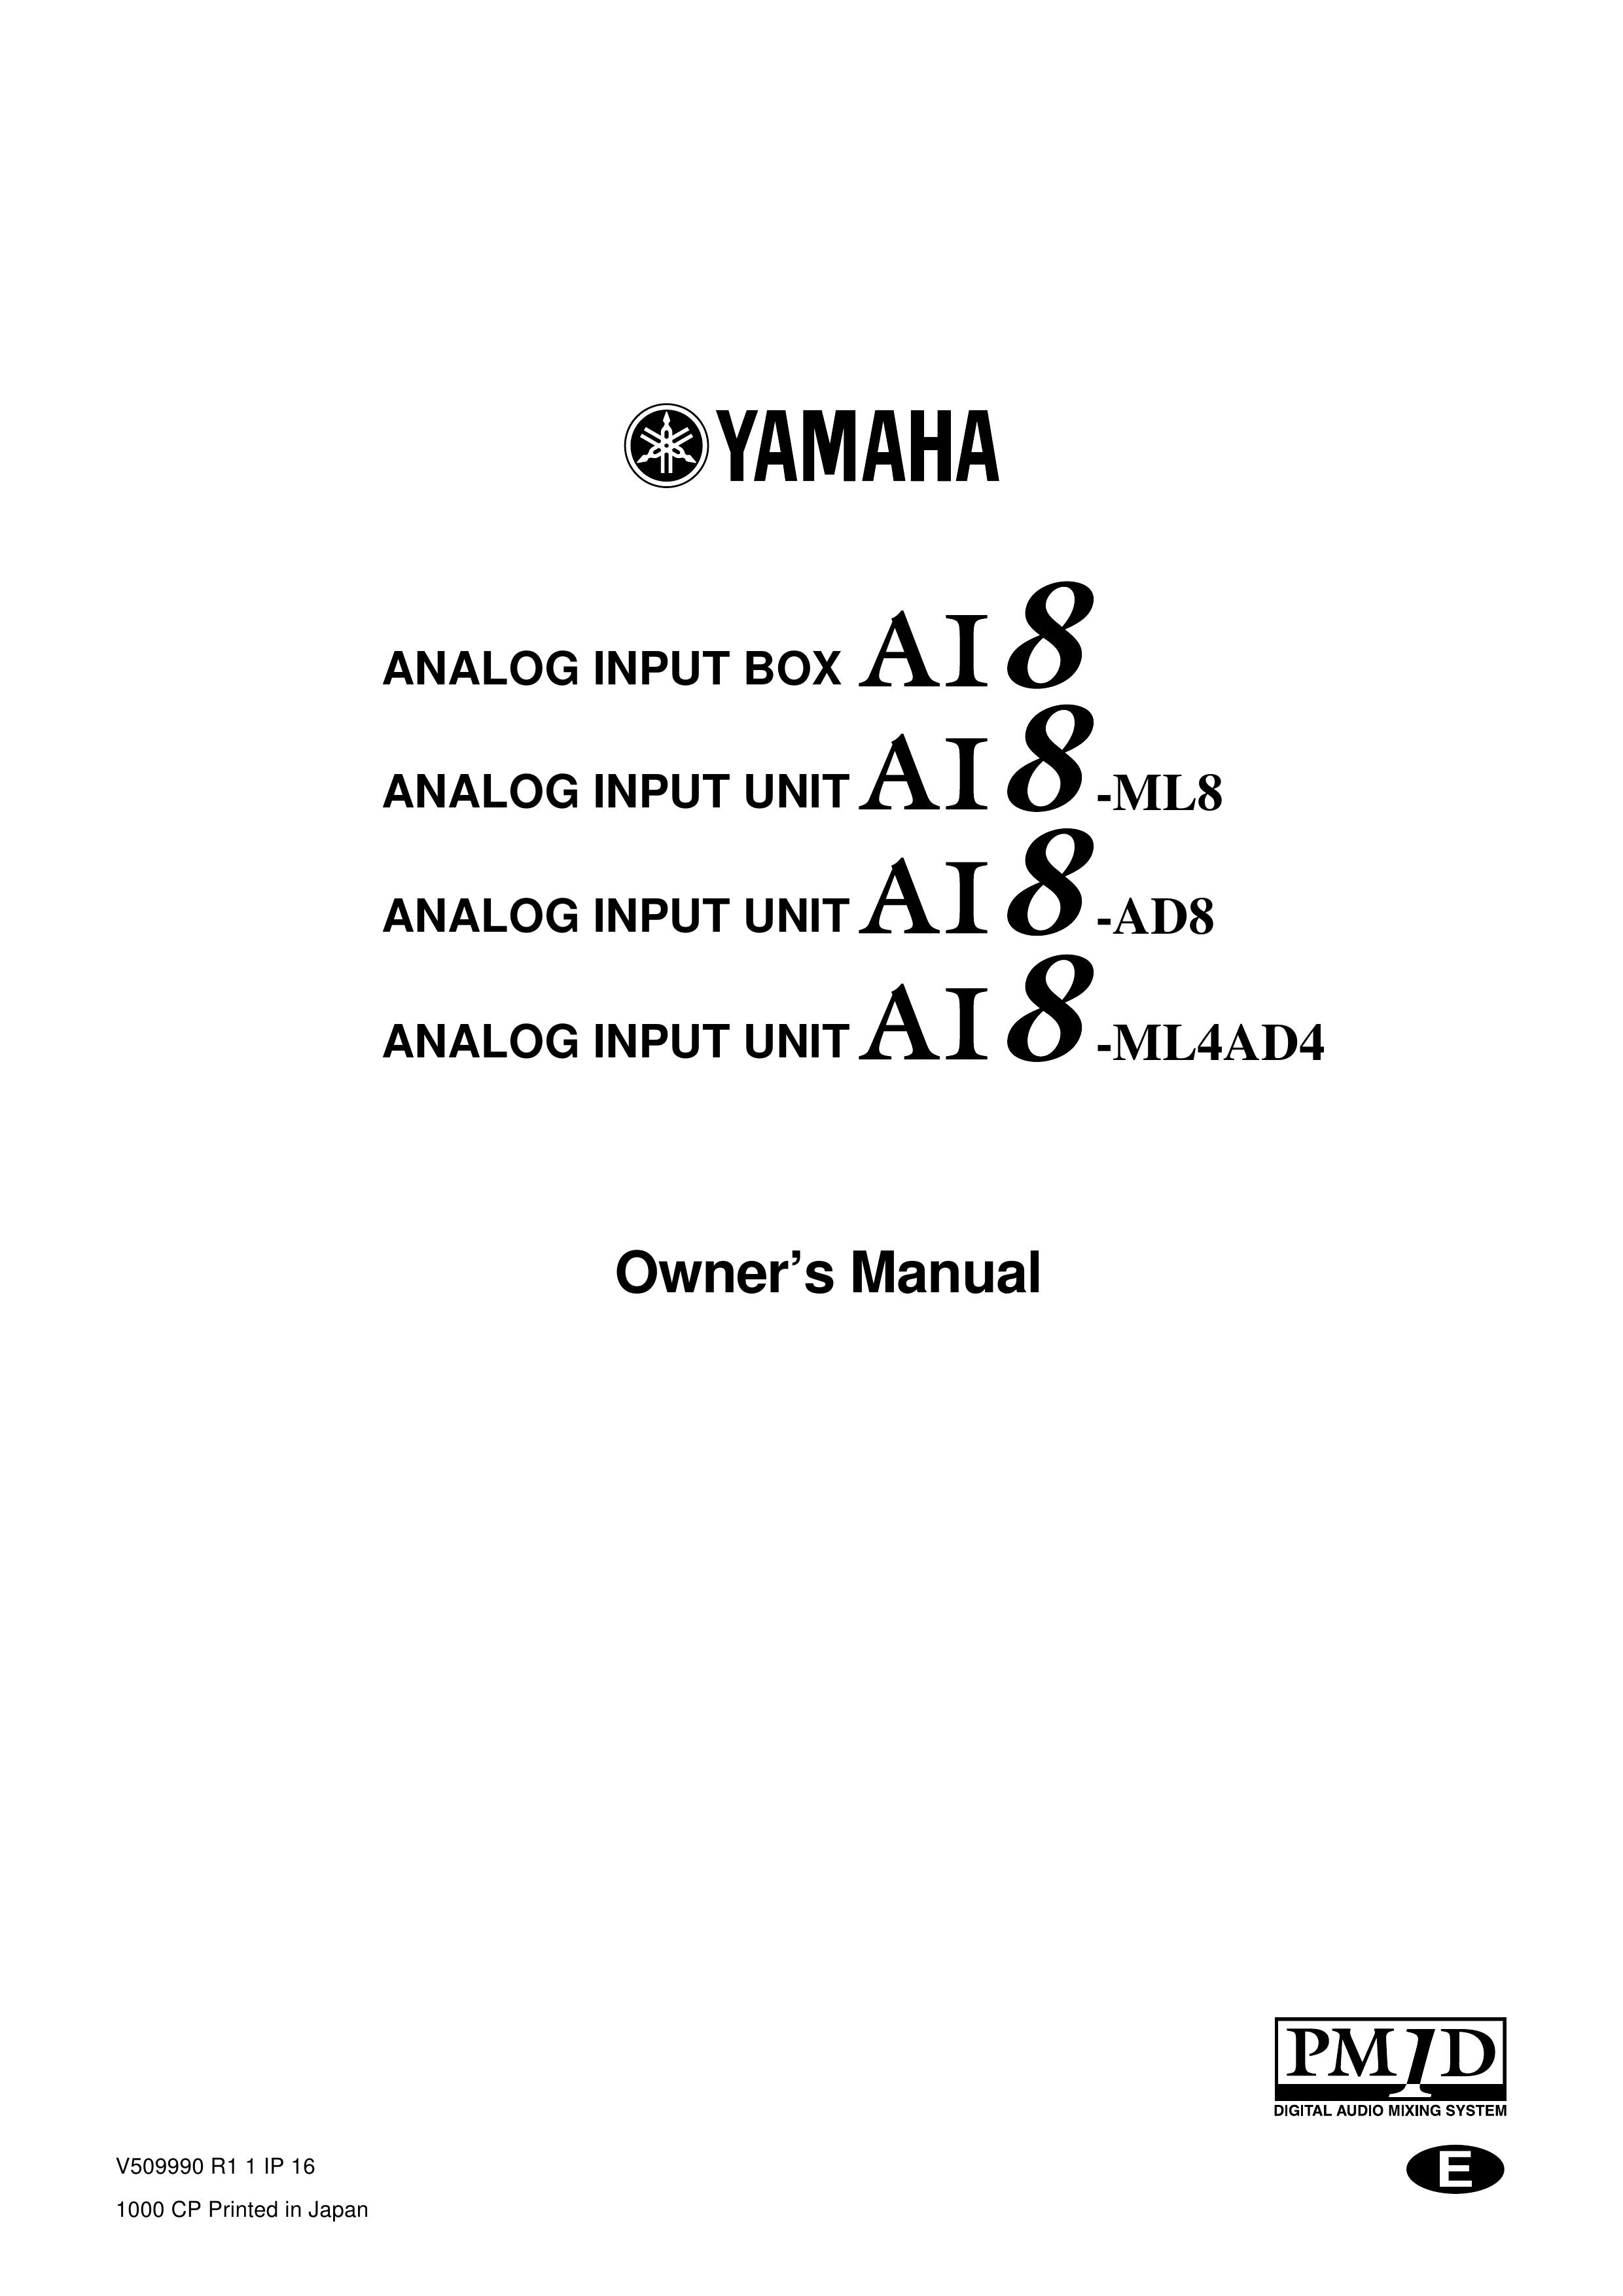 Yamaha AI8-ML4AD4 Music Mixer User Manual